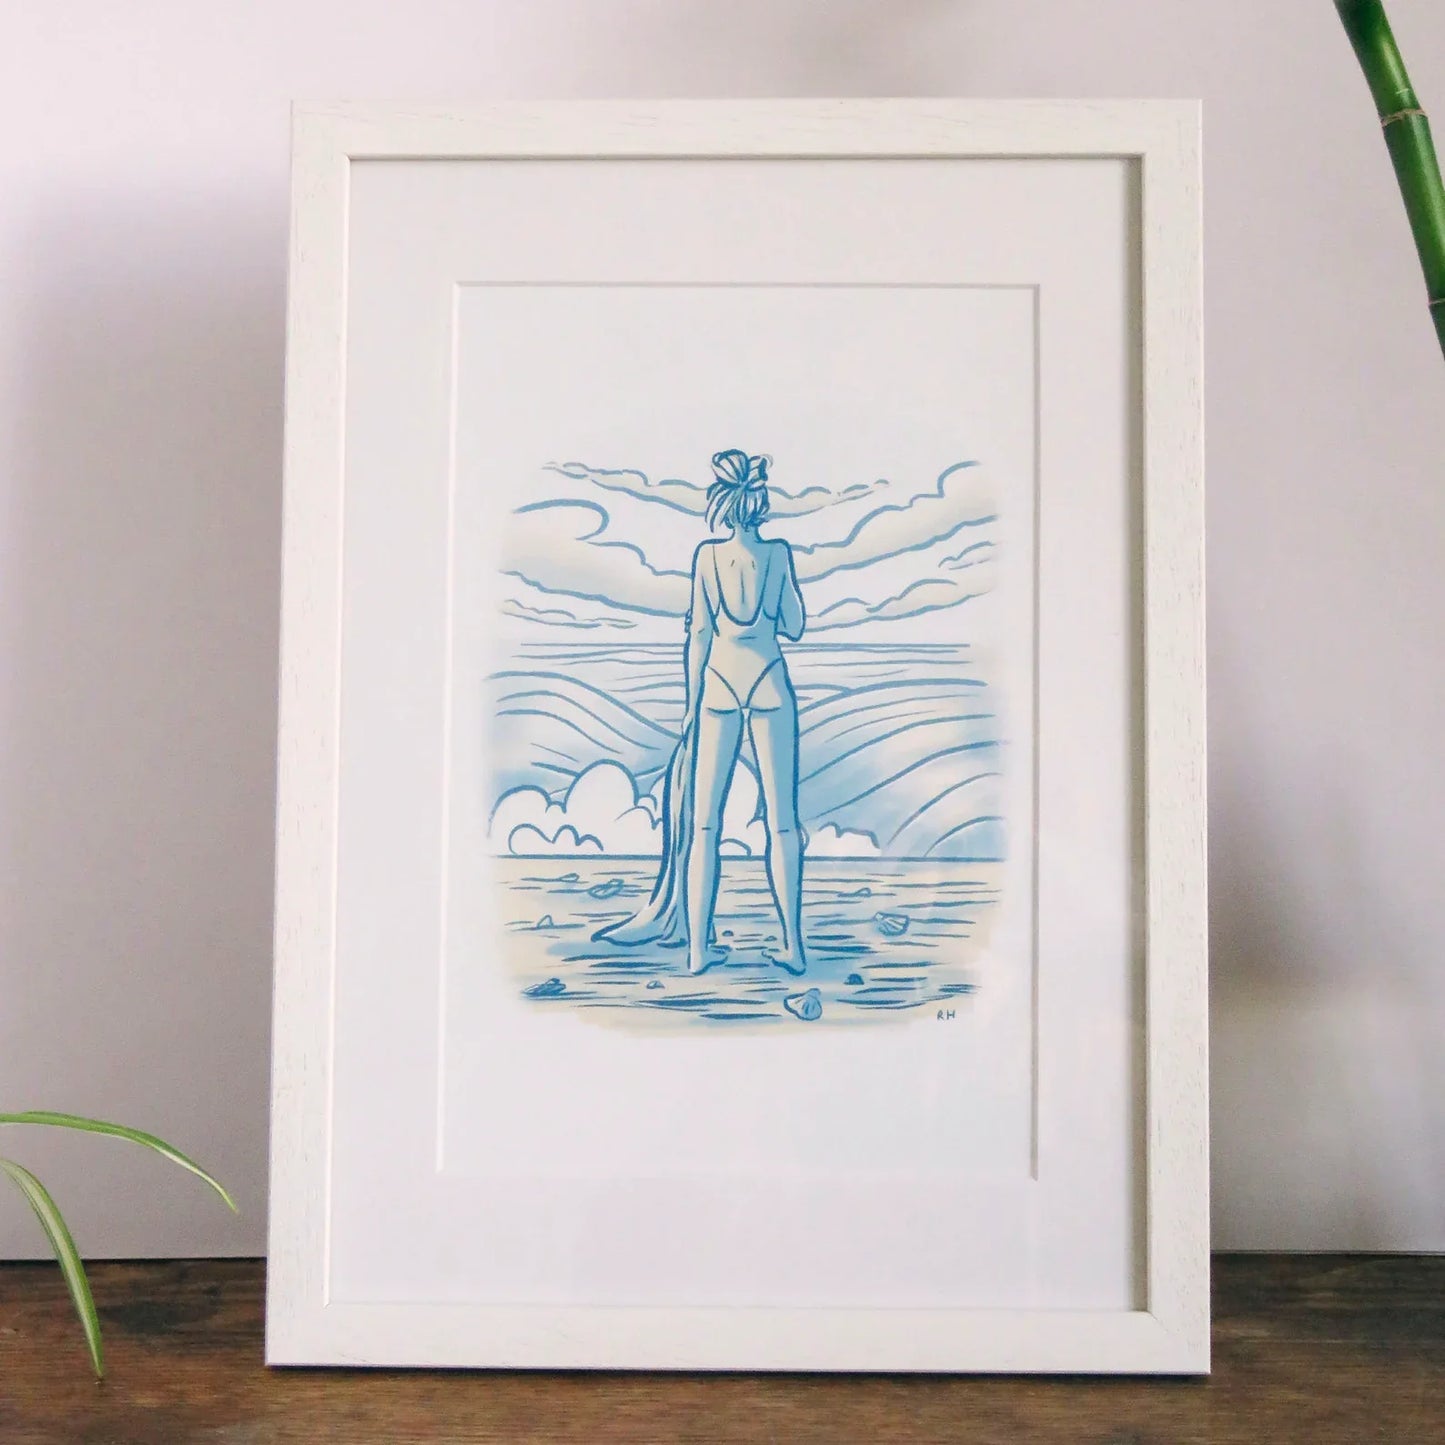 Rhea Hanlon A4 Print - Waiting By The Waves